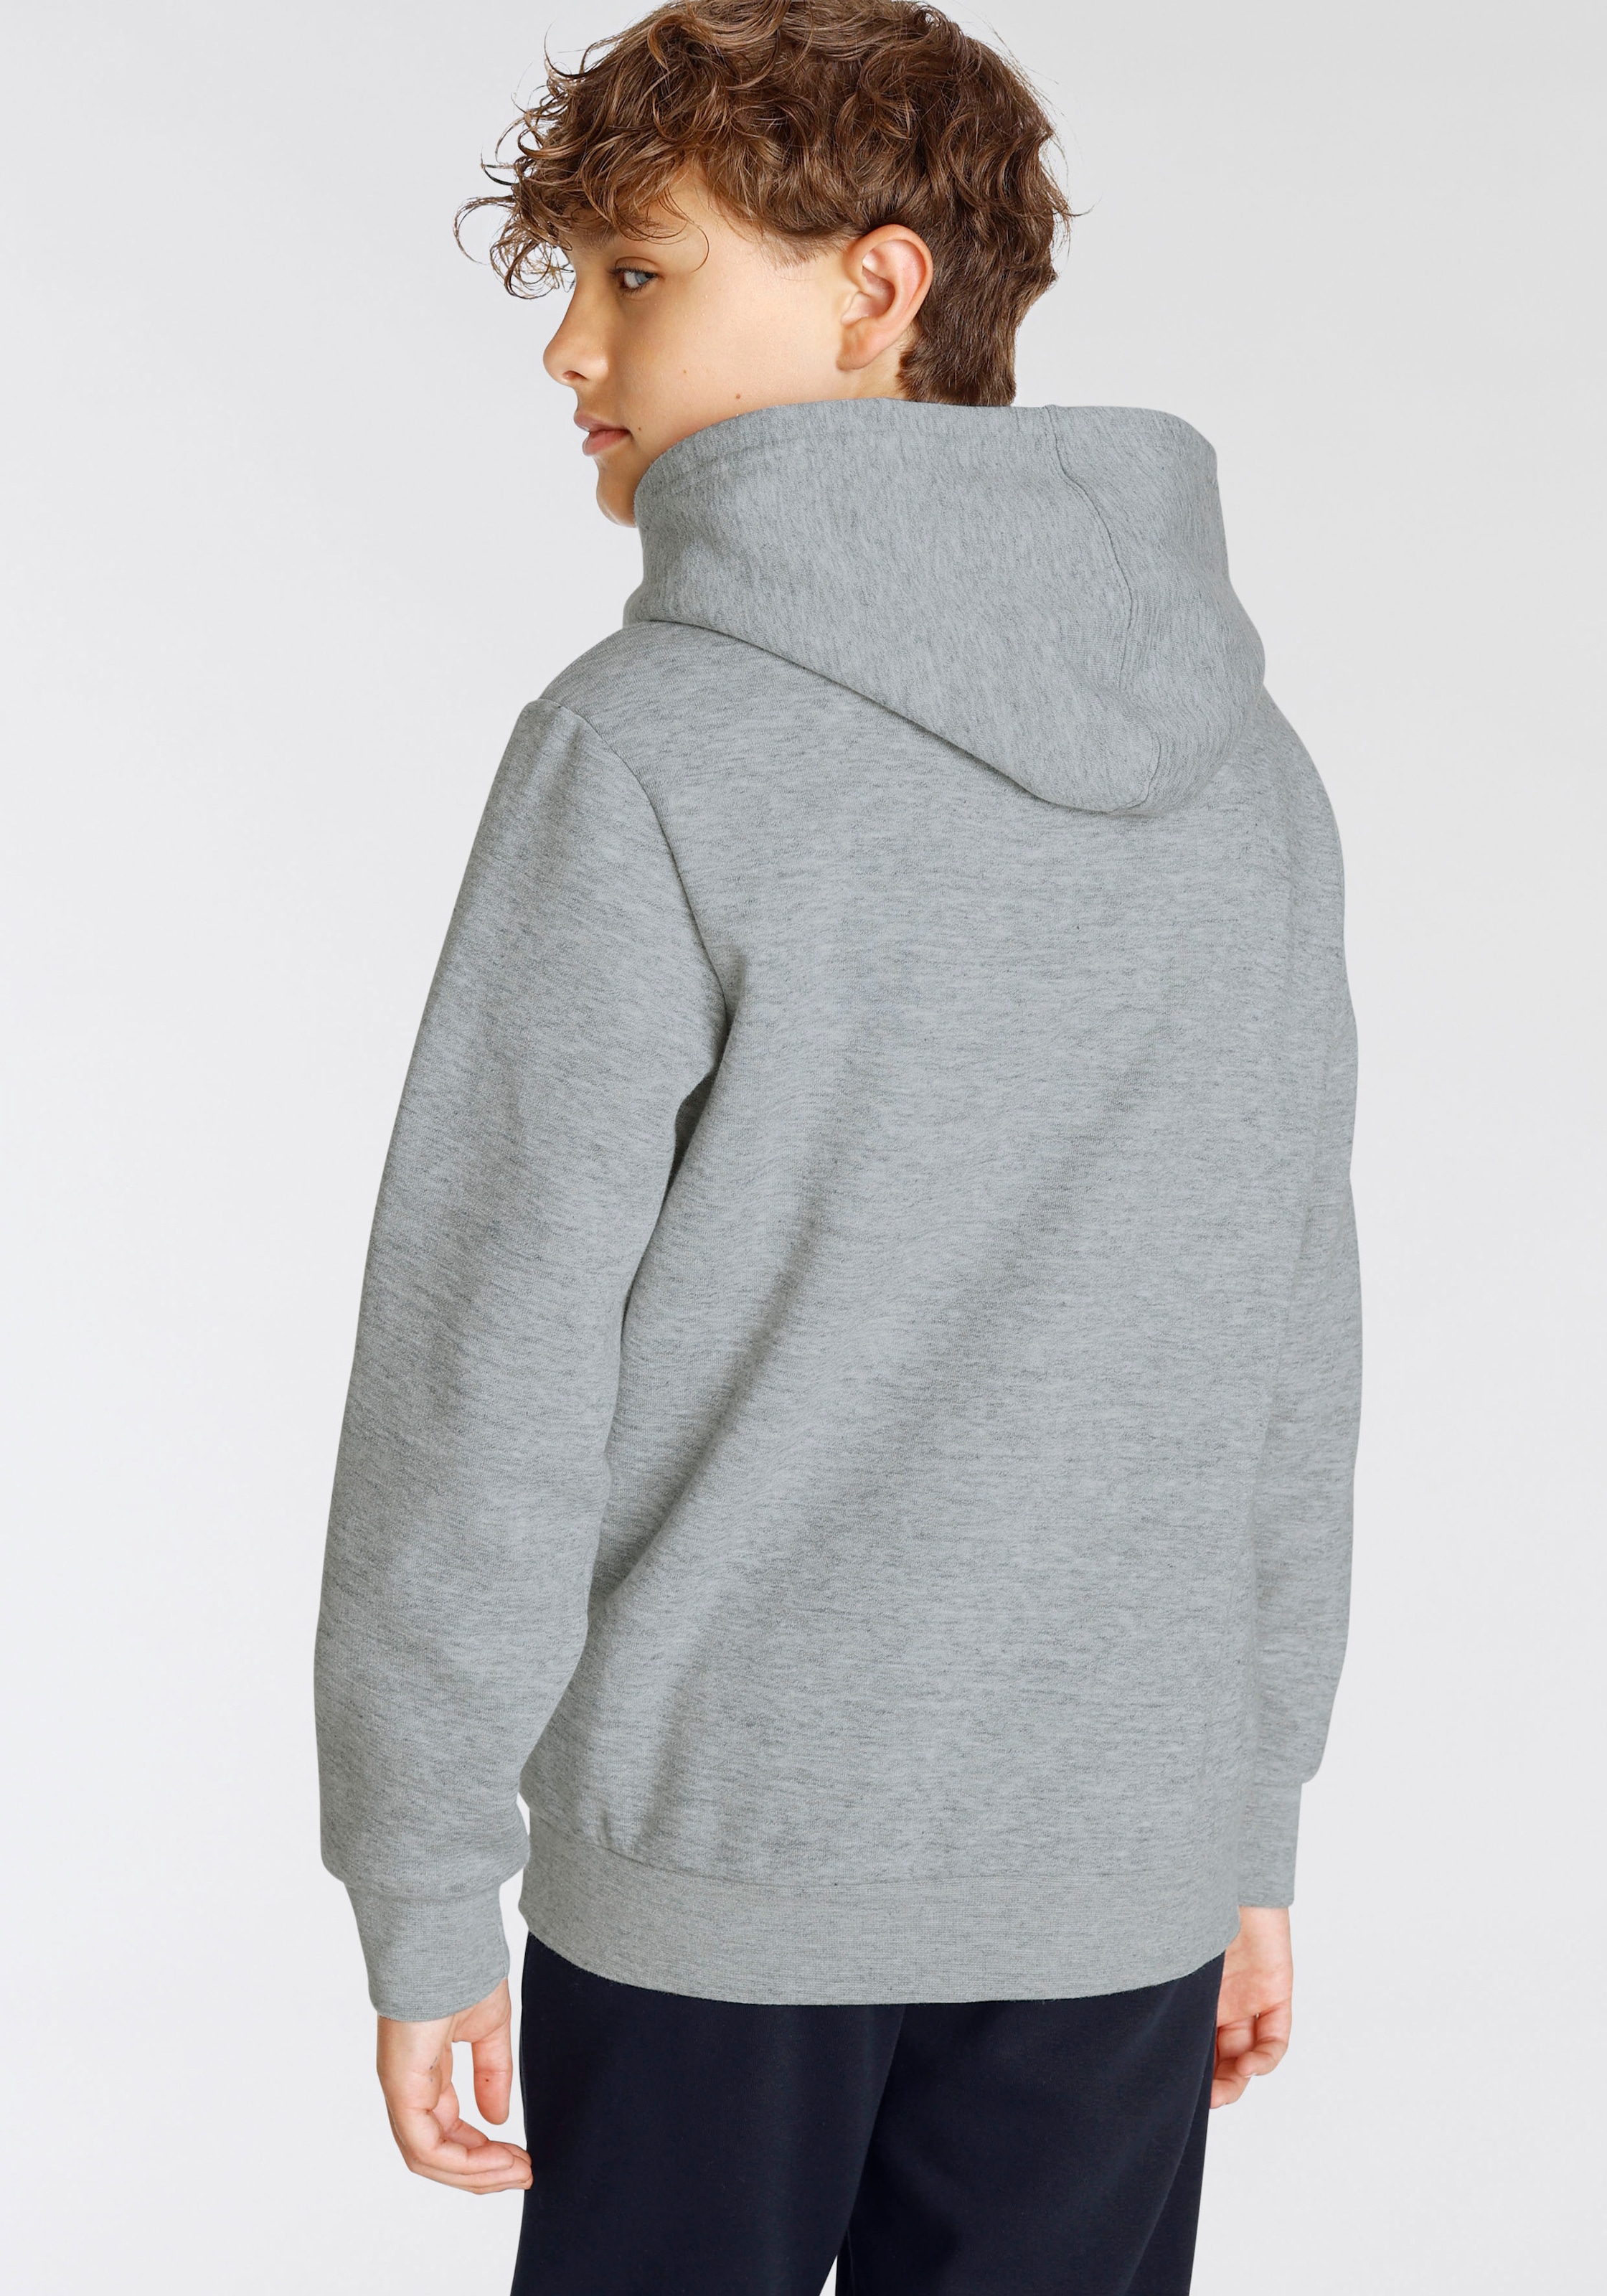 »Classic Champion Sweatshirt online large Kinder« Logo für kaufen - Hooded Sweatshirt